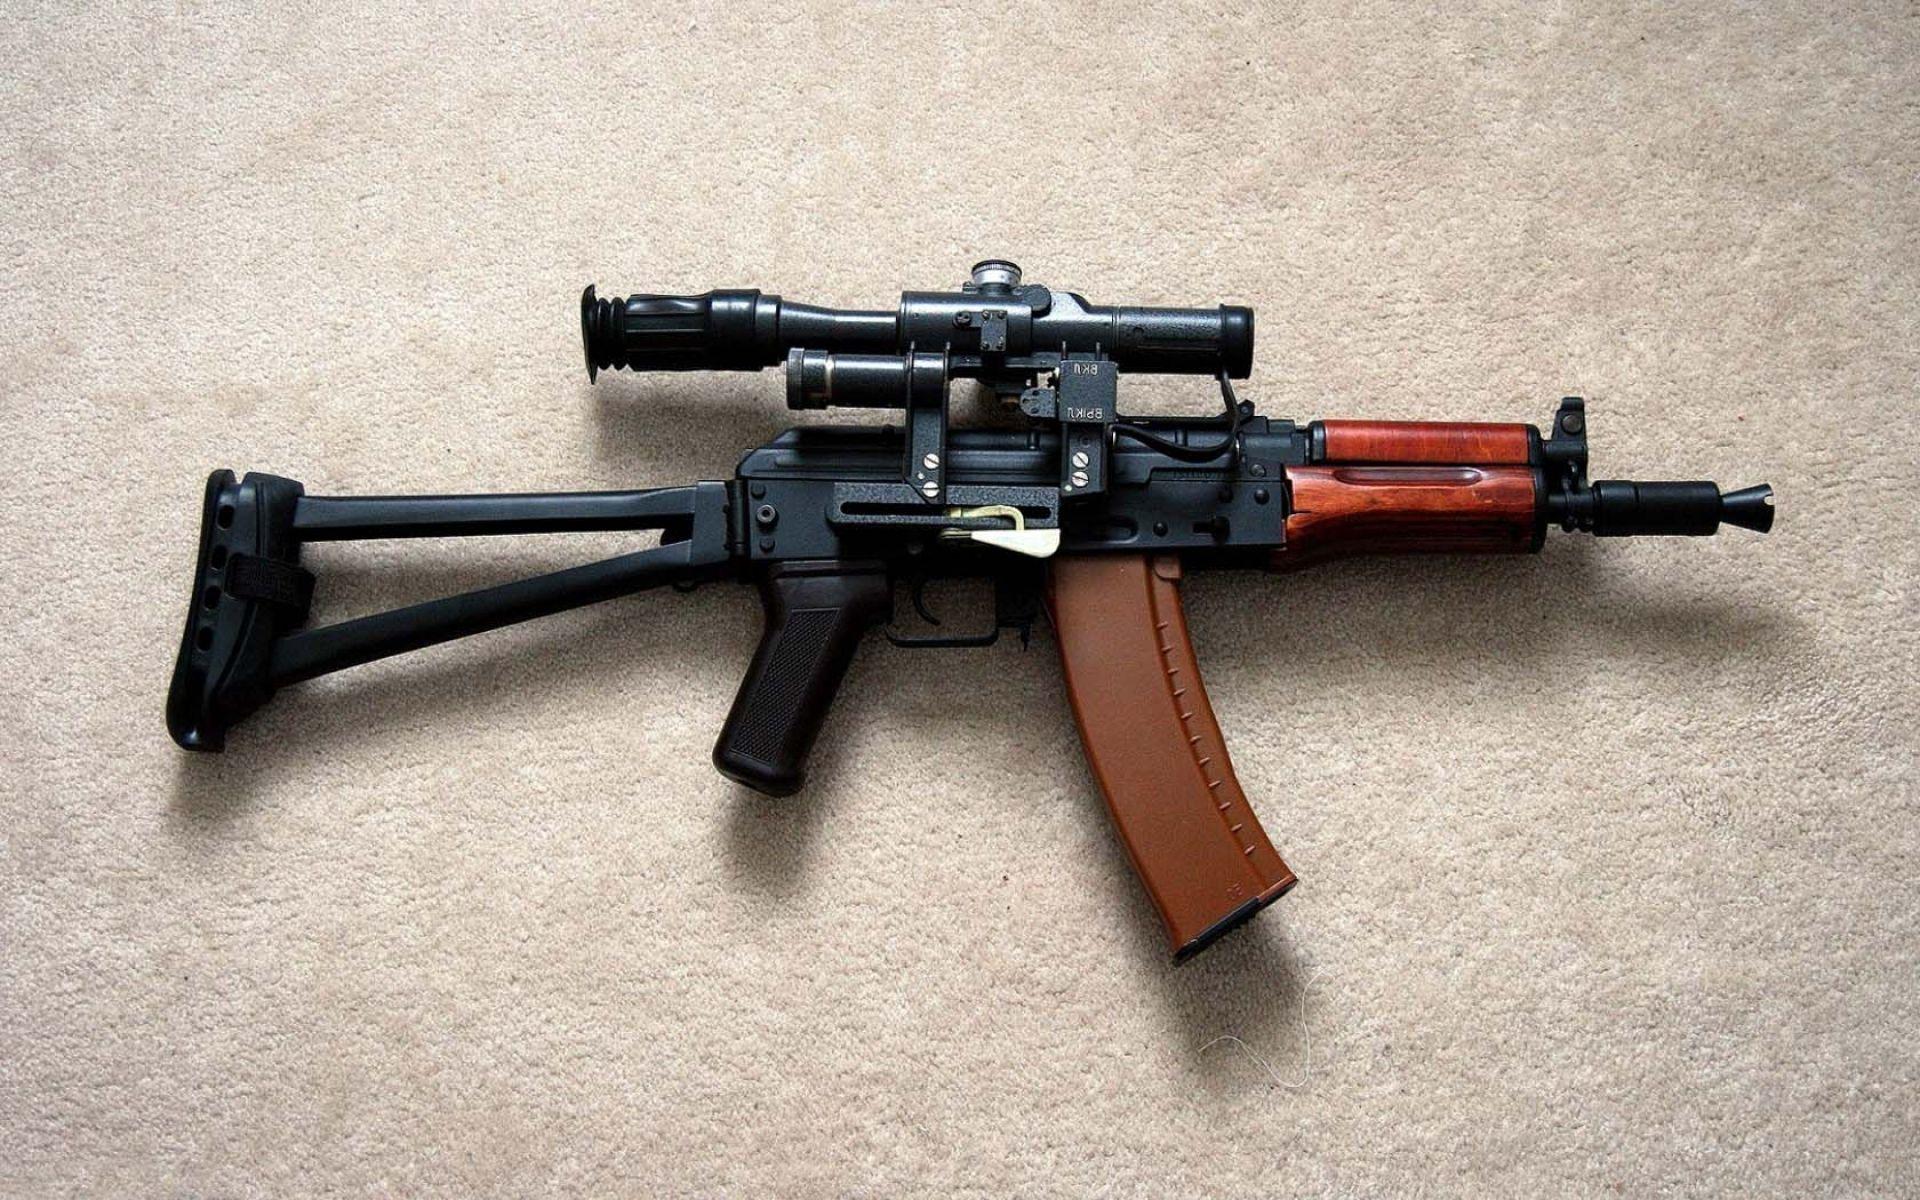 AK 47 Assault Rifle. HD Guns Wallpaper For Mobile And Desktop